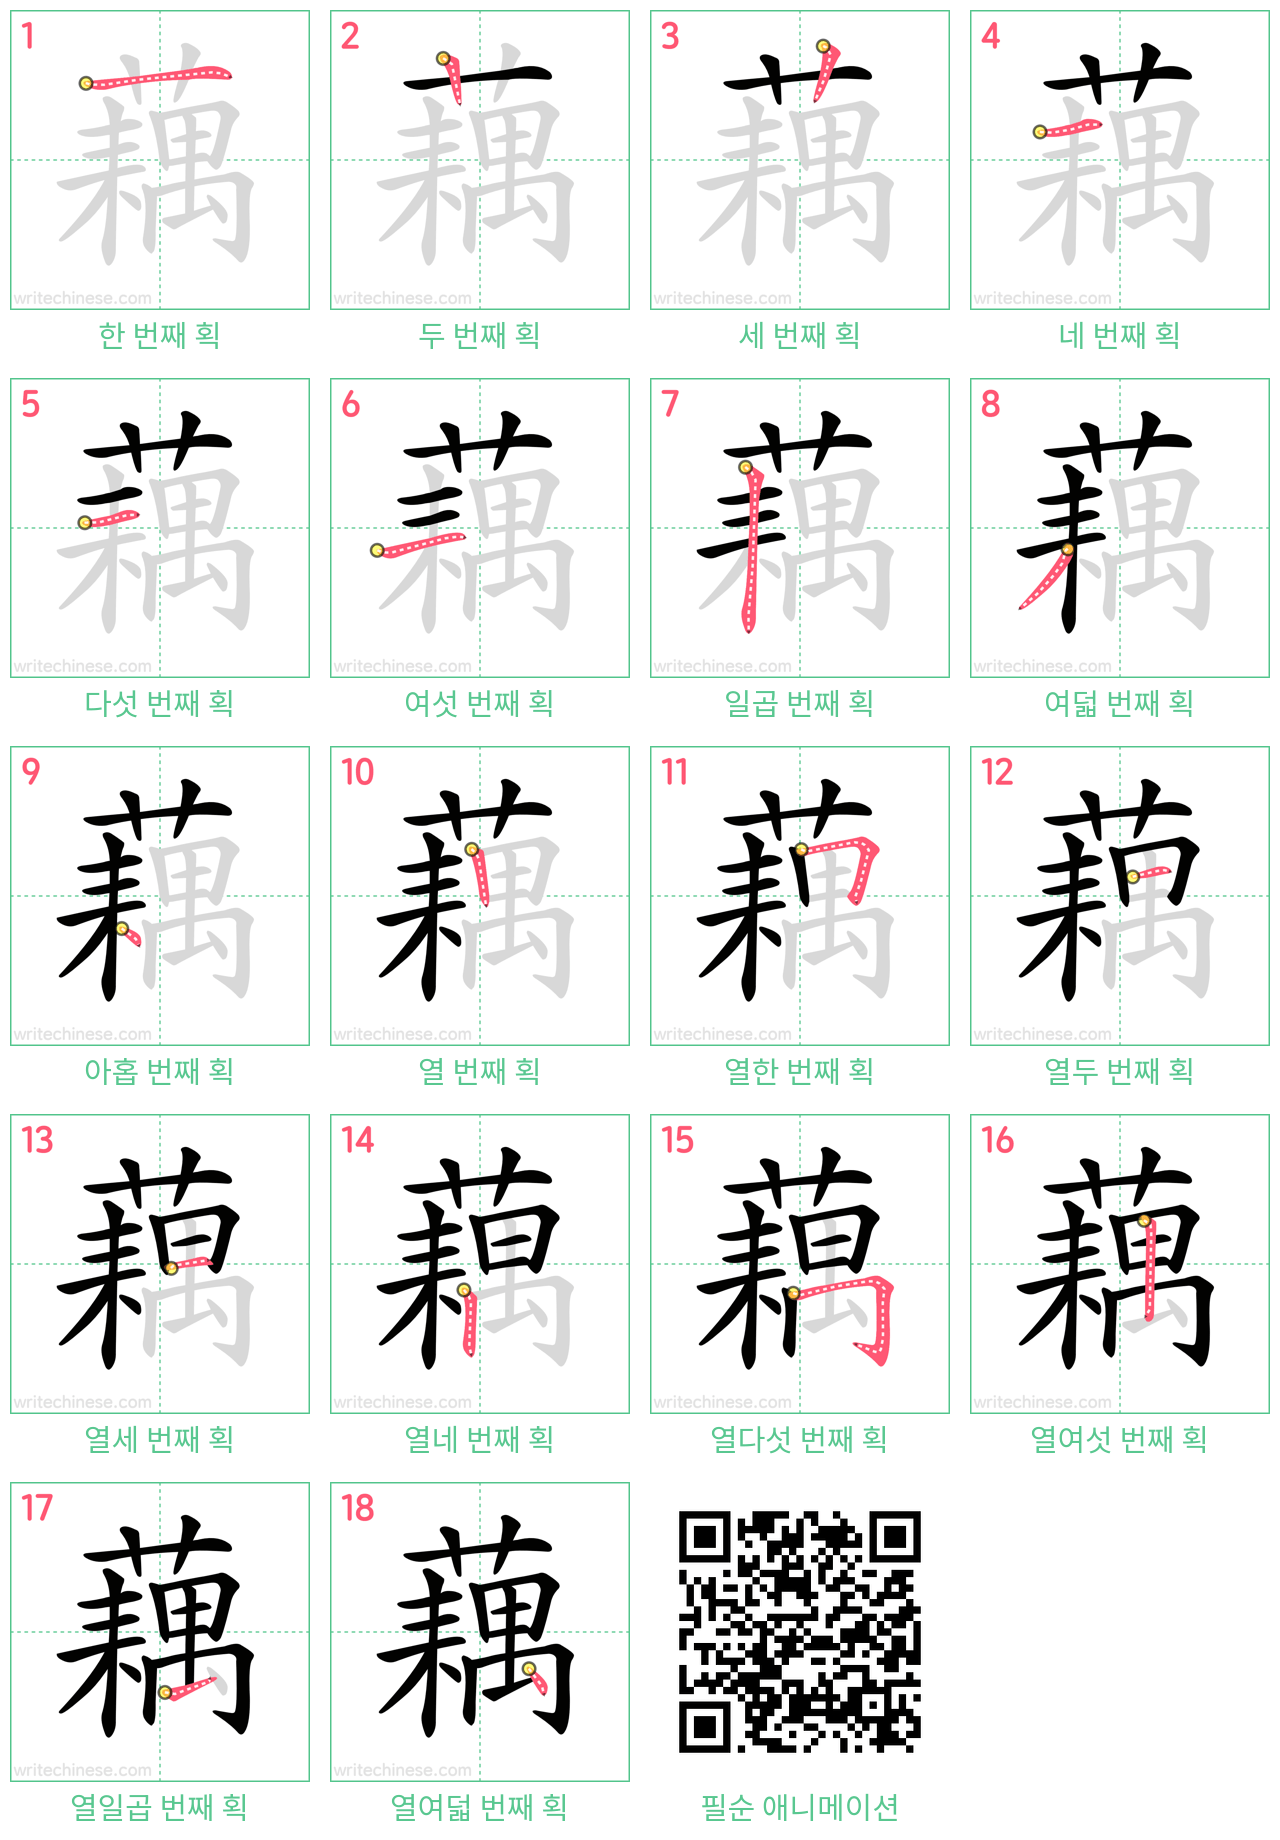 藕 step-by-step stroke order diagrams